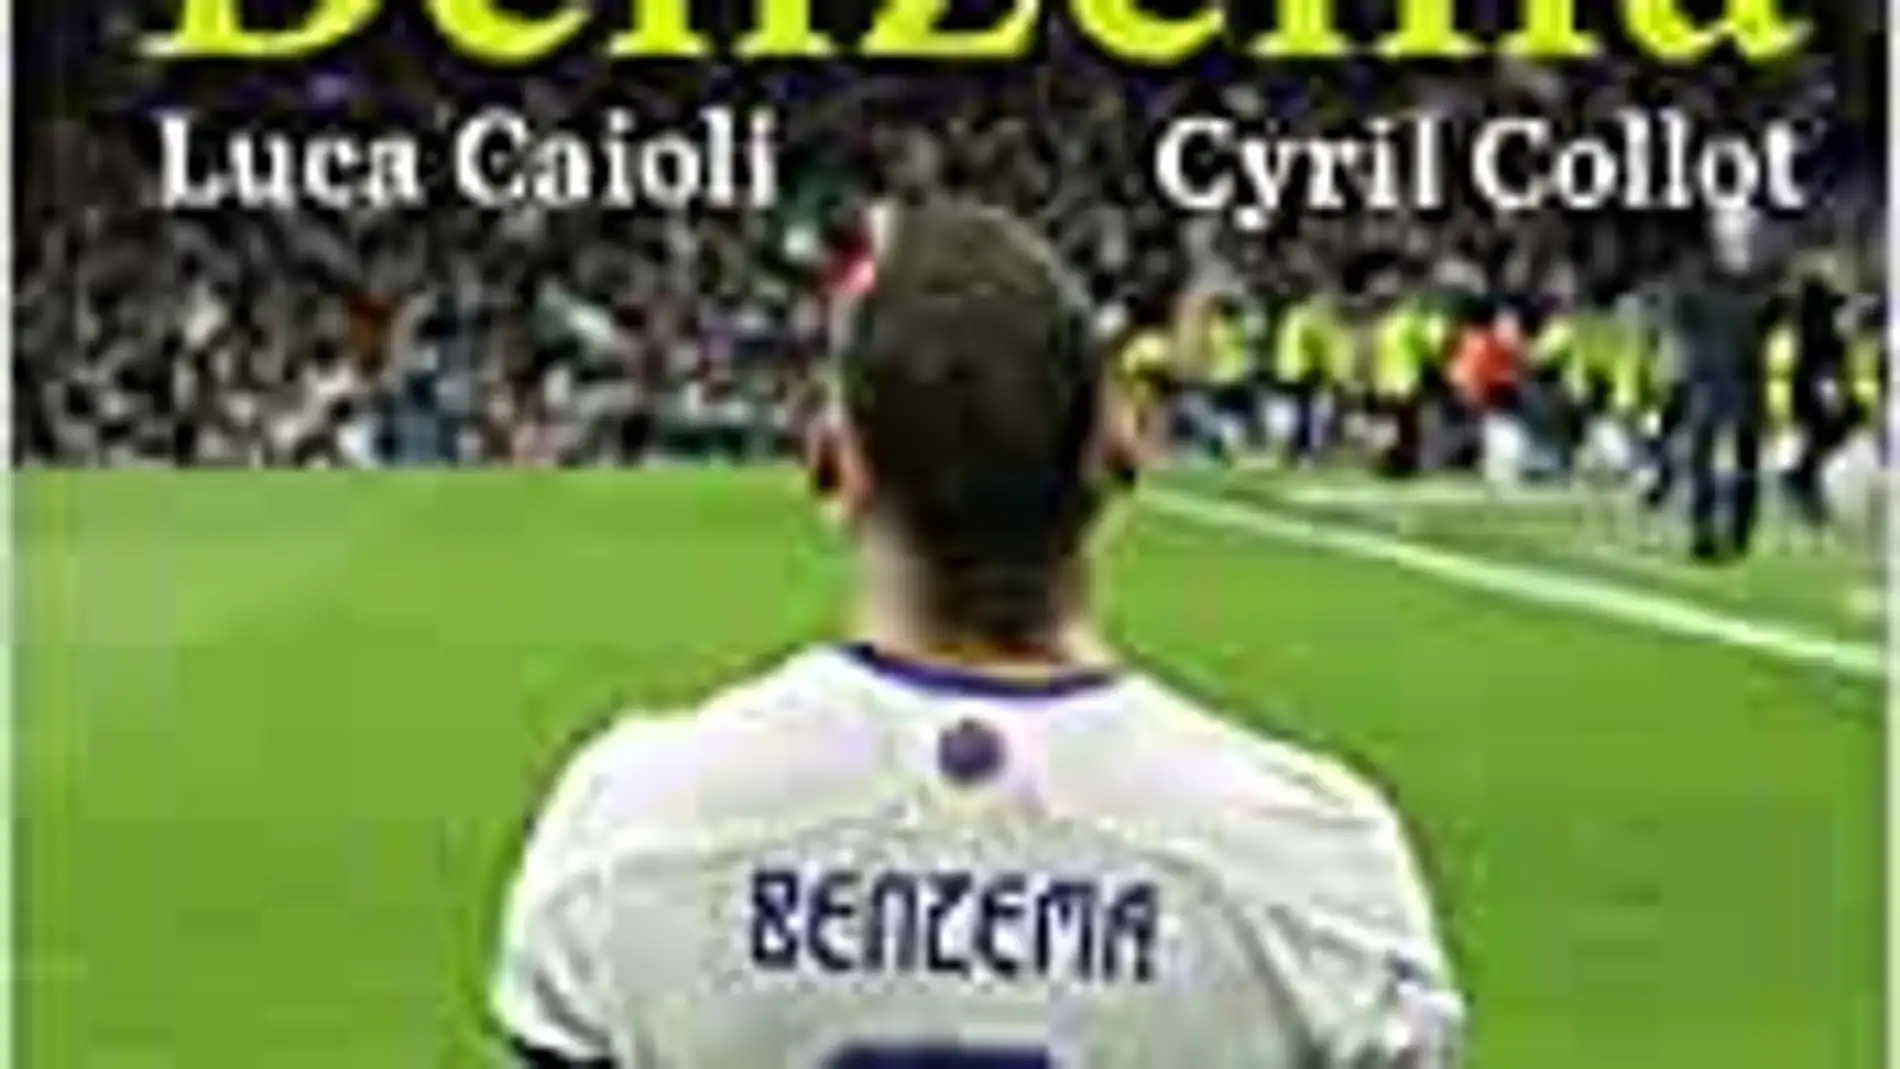 «Benzema», la biografía del jugador del Real Madrid